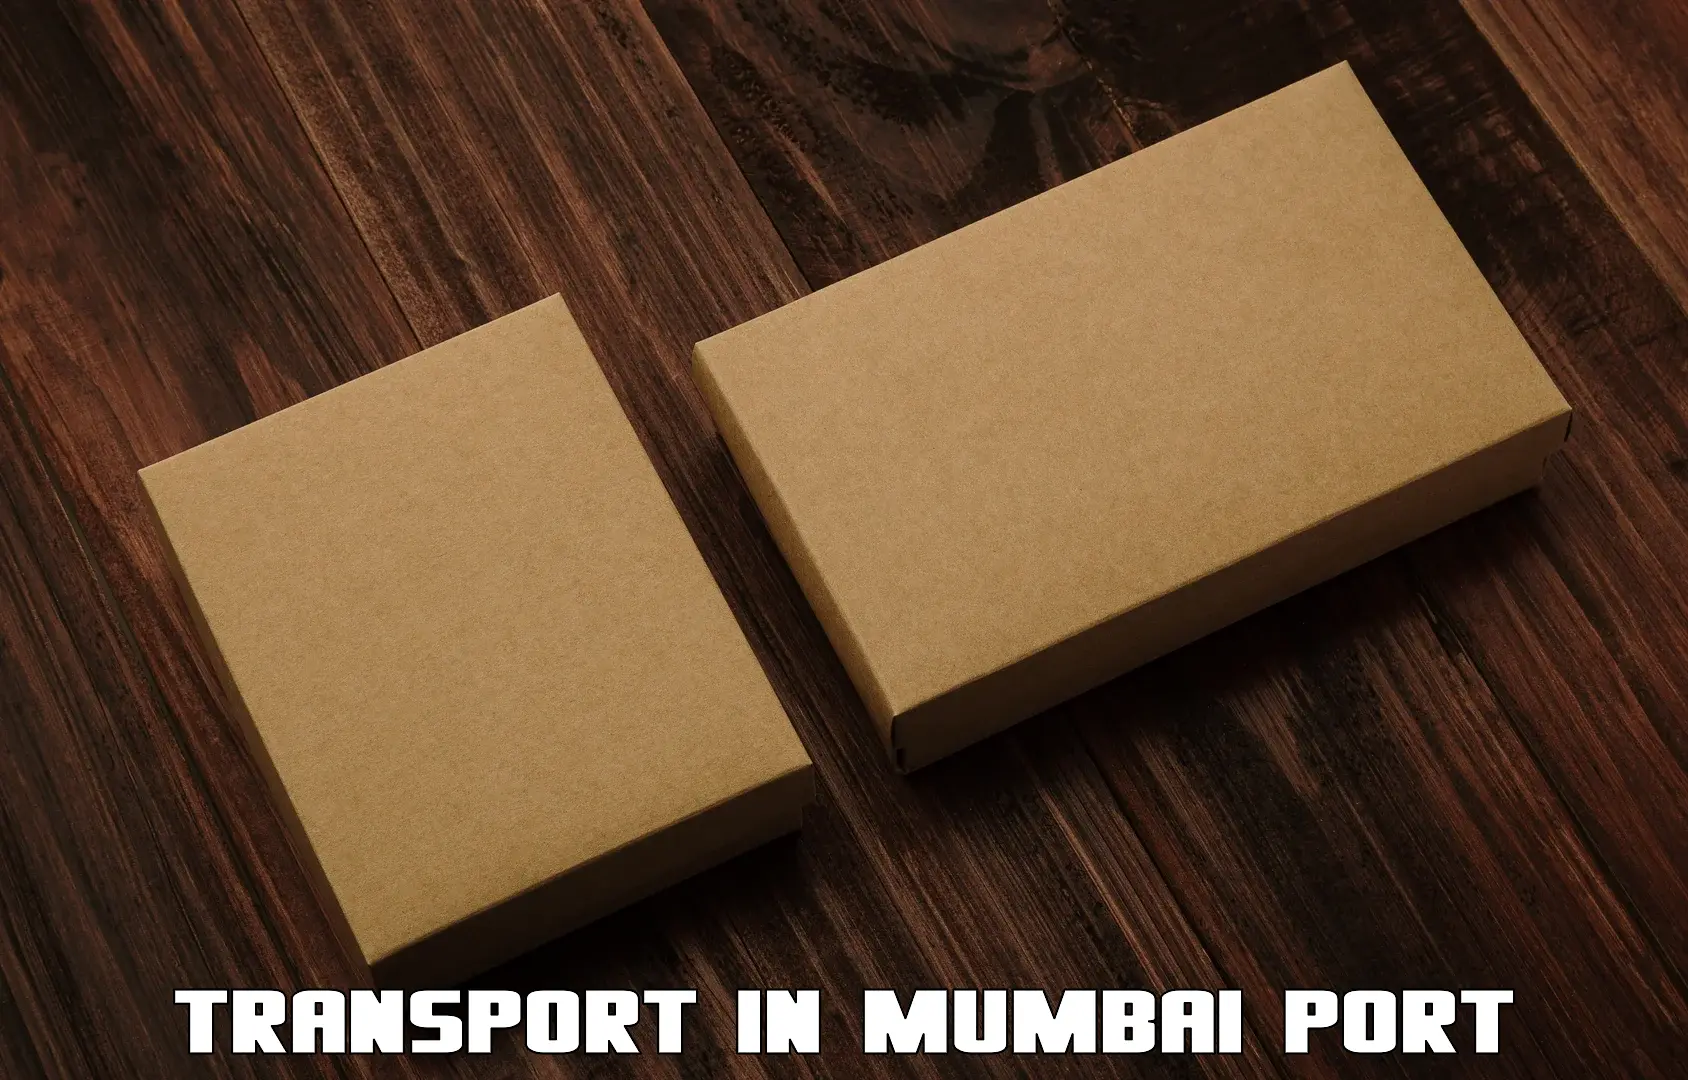 Truck transport companies in India in Mumbai Port